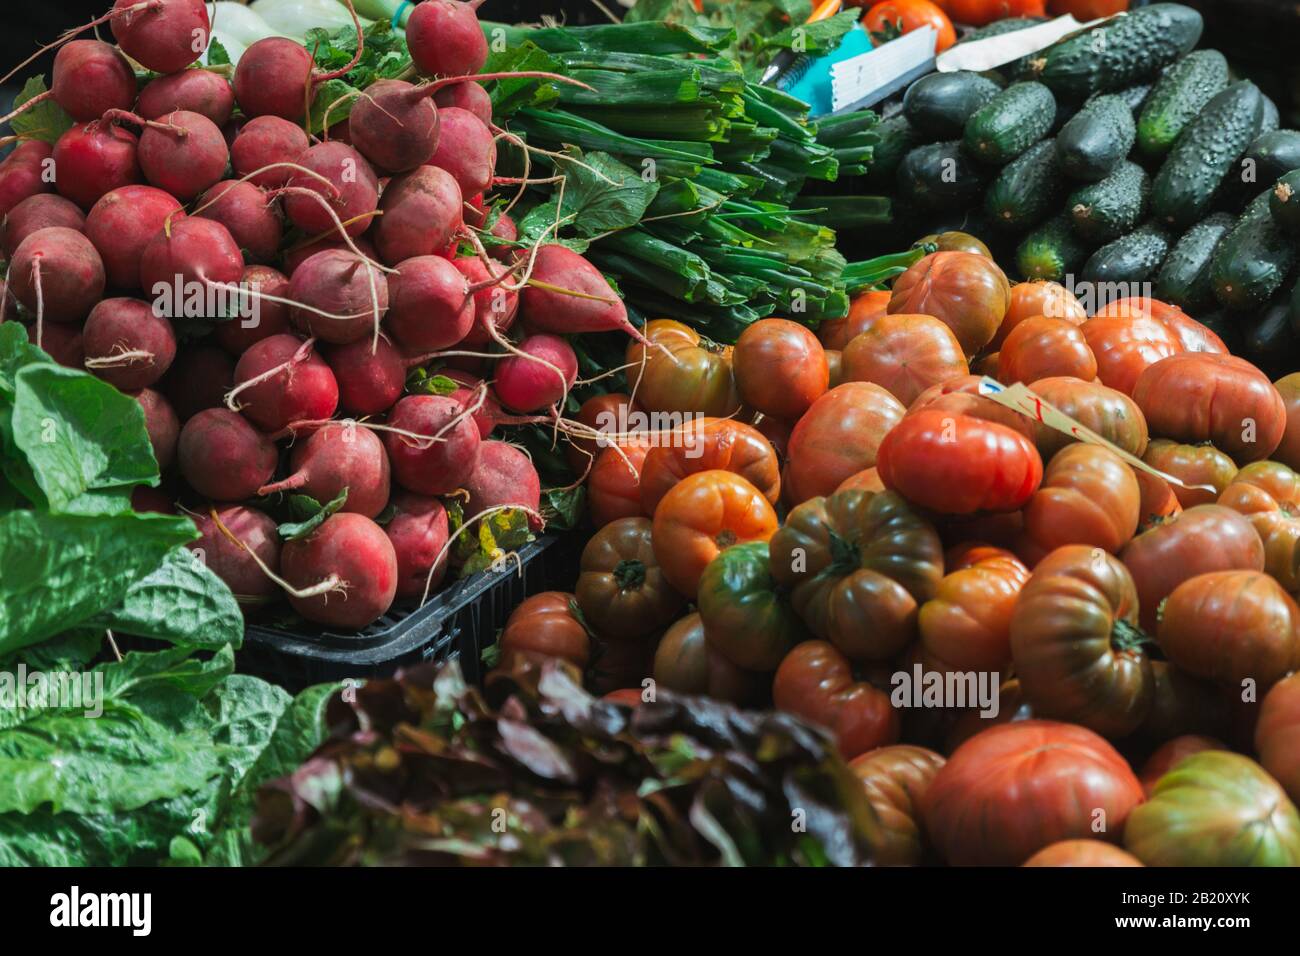 Stock photo d'un bouquet de légumes frais assortis dans un étalage de marché Banque D'Images